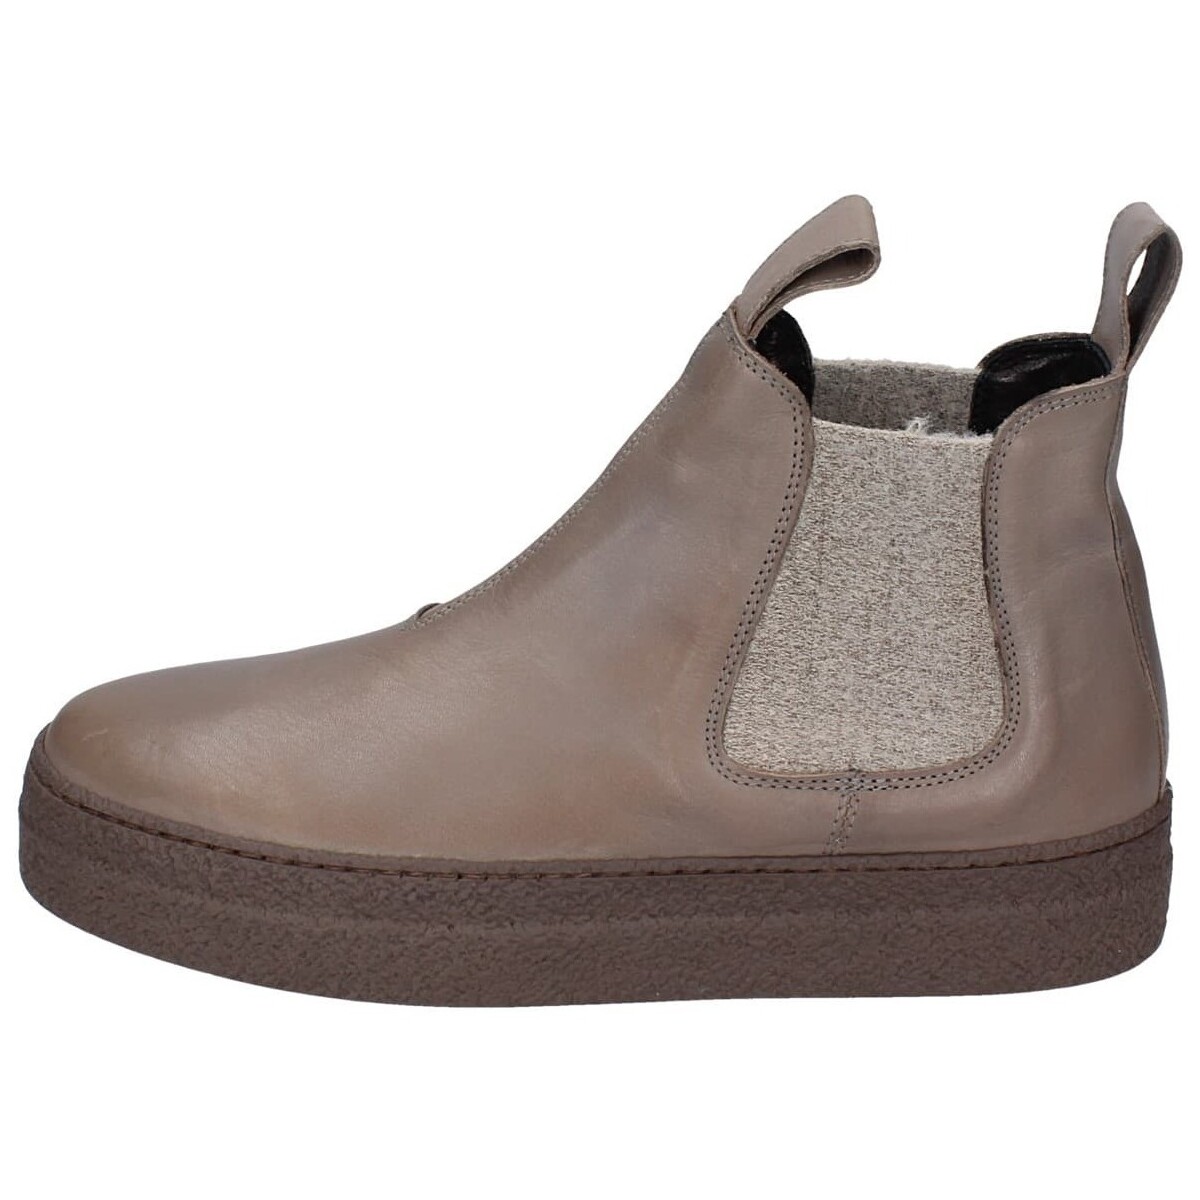 Παπούτσια Γυναίκα Μποτίνια Loafer EY306 Brown